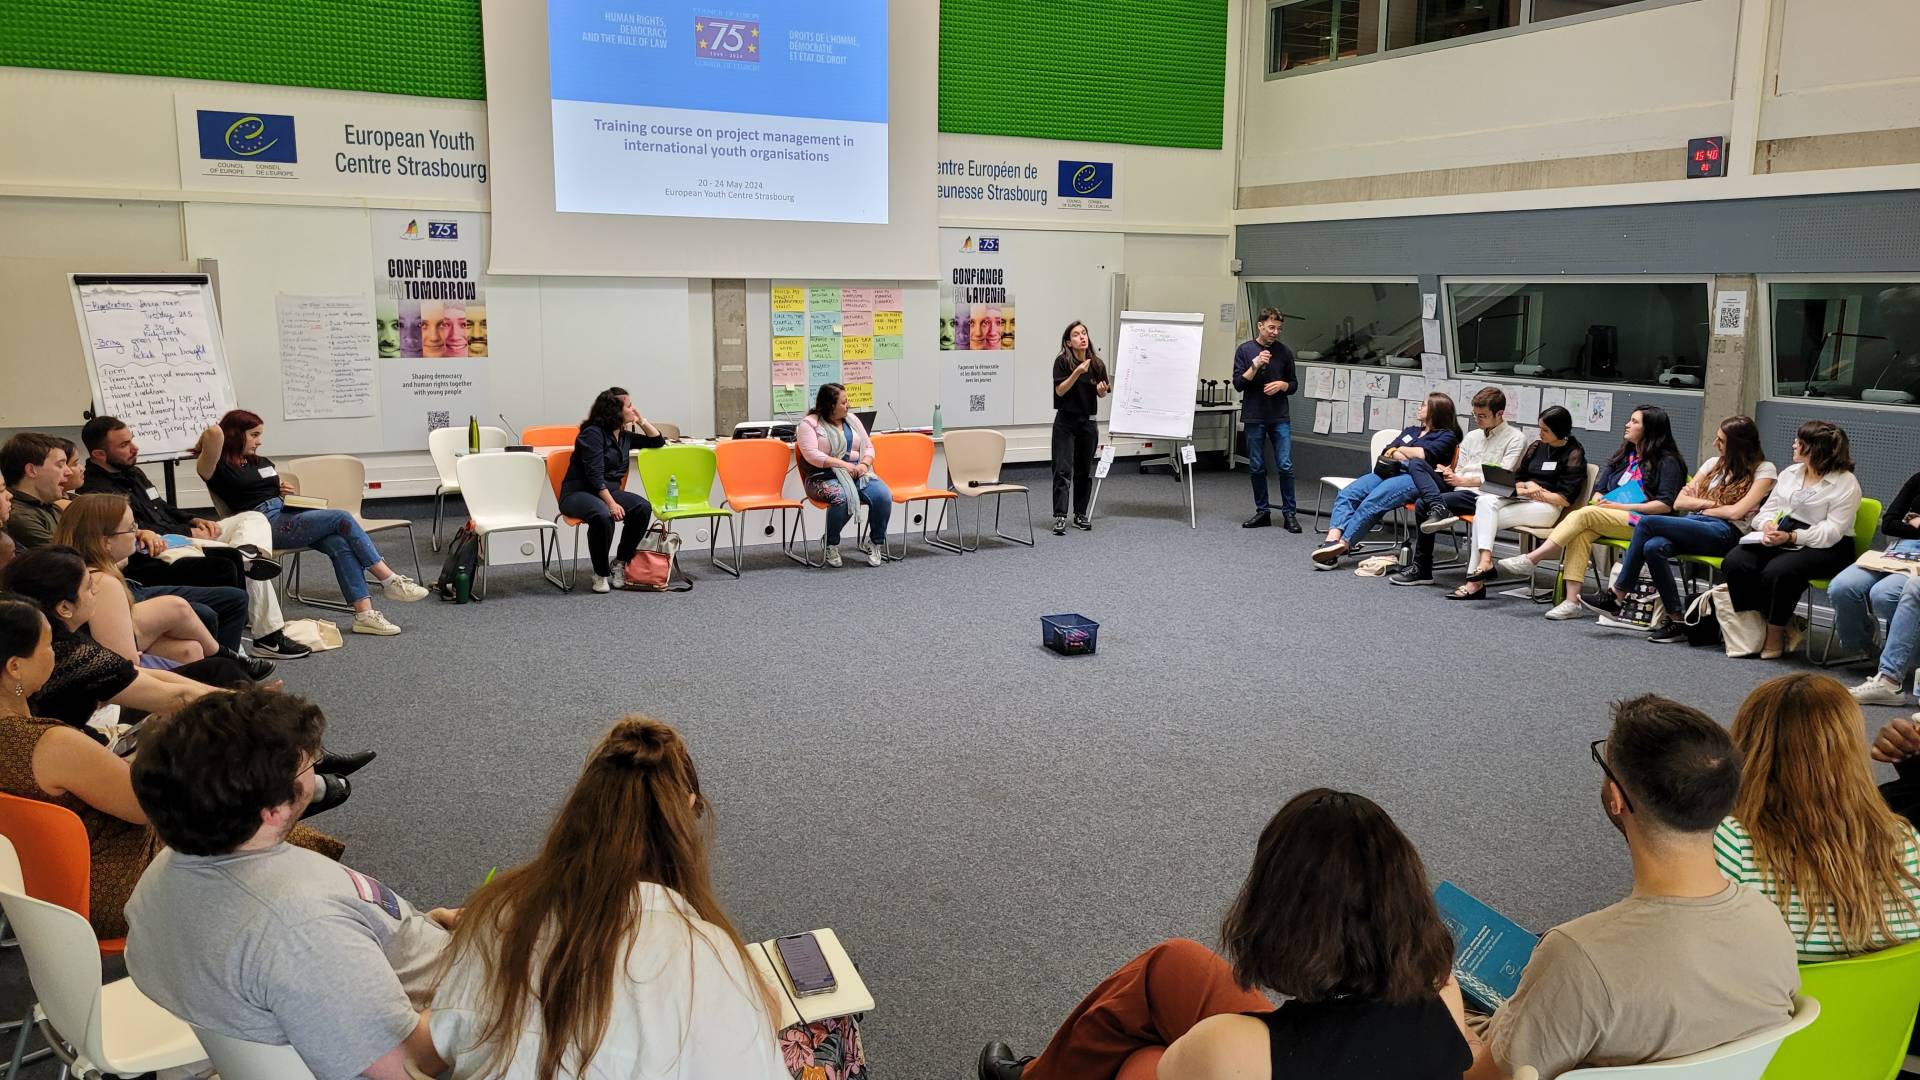 Renforcer les compétences en gestion de projet dans les organisations et réseaux internationaux de jeunesse